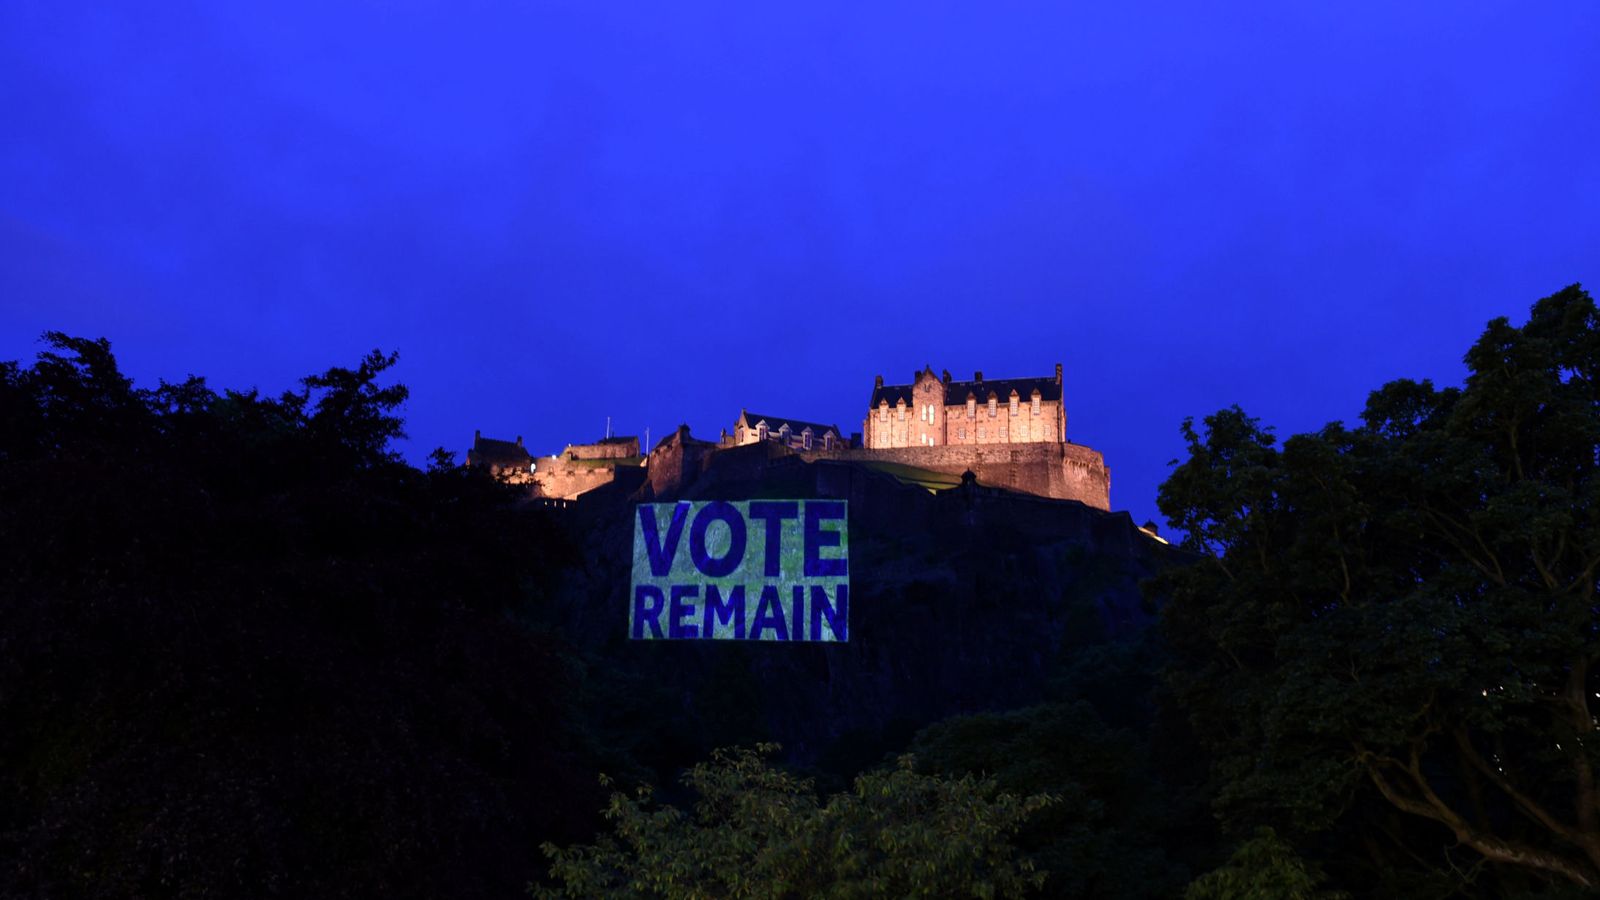 Foto: El castillo de Edimburgo iluminado con un cartel a favor de la permanencia, el 21 de junio de 2016 (Reuters)